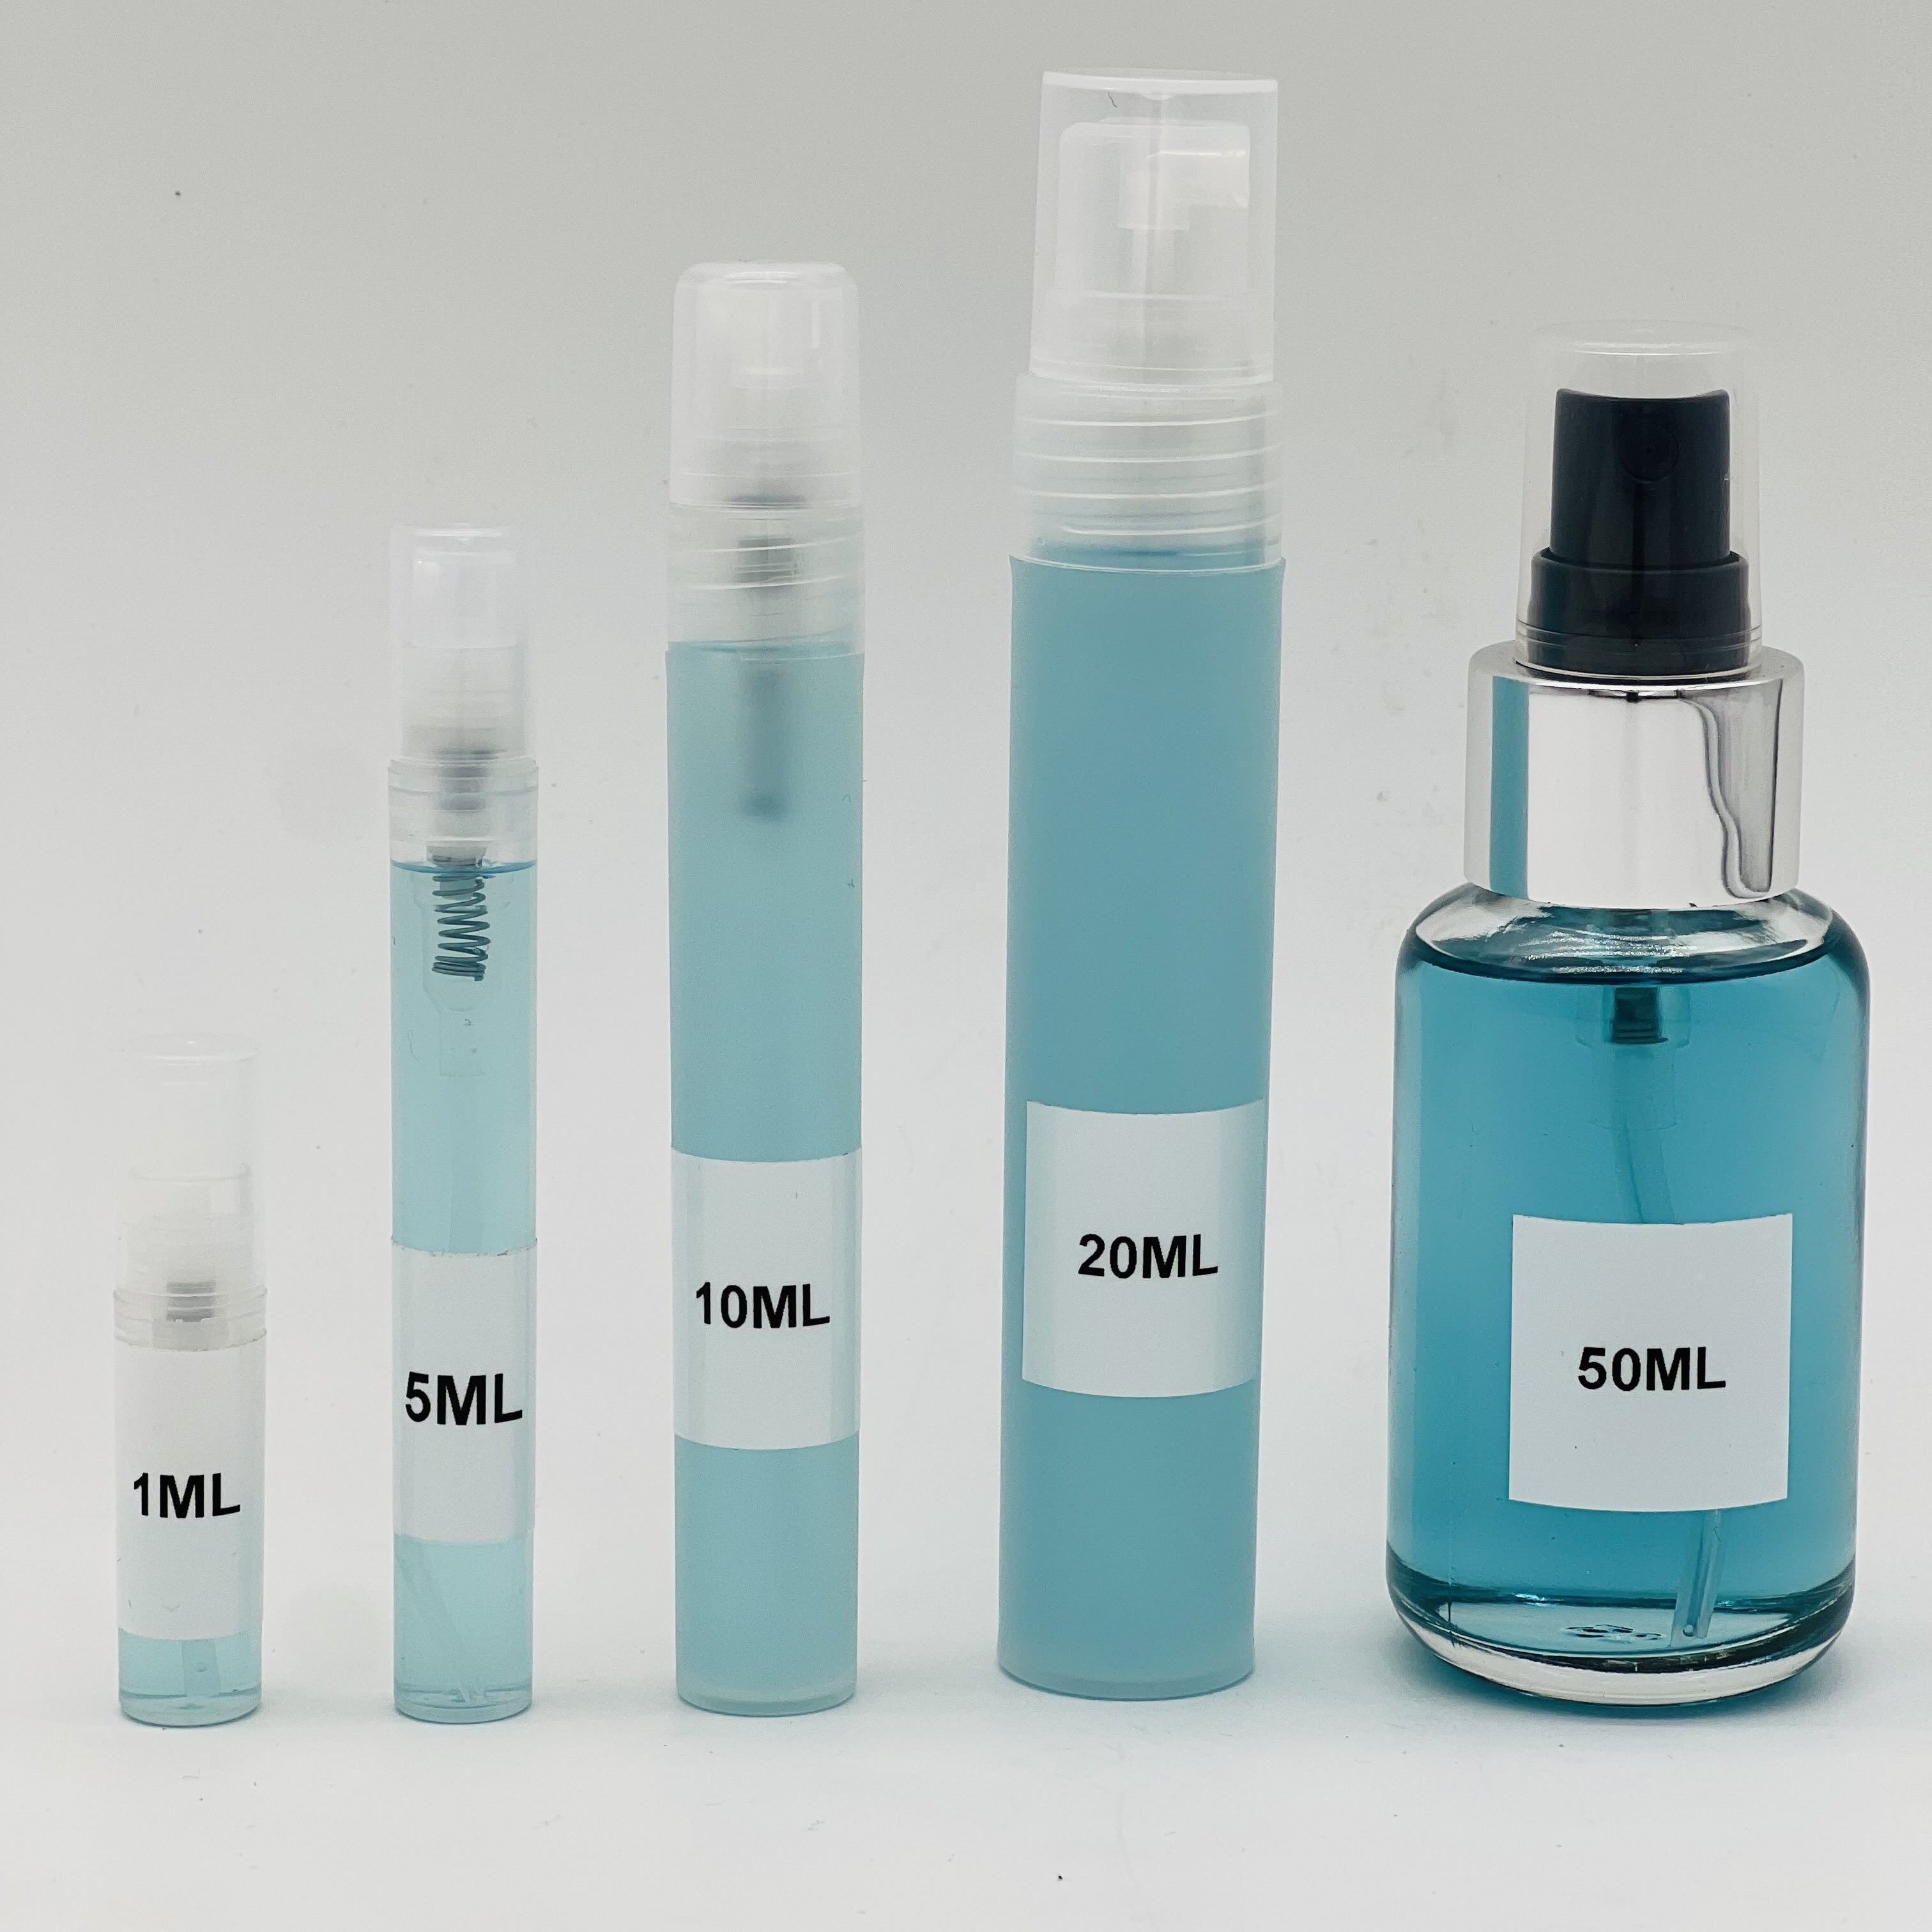 Louis Vuitton Al Hasard Eau De Parfum – Fragrance Samples UK